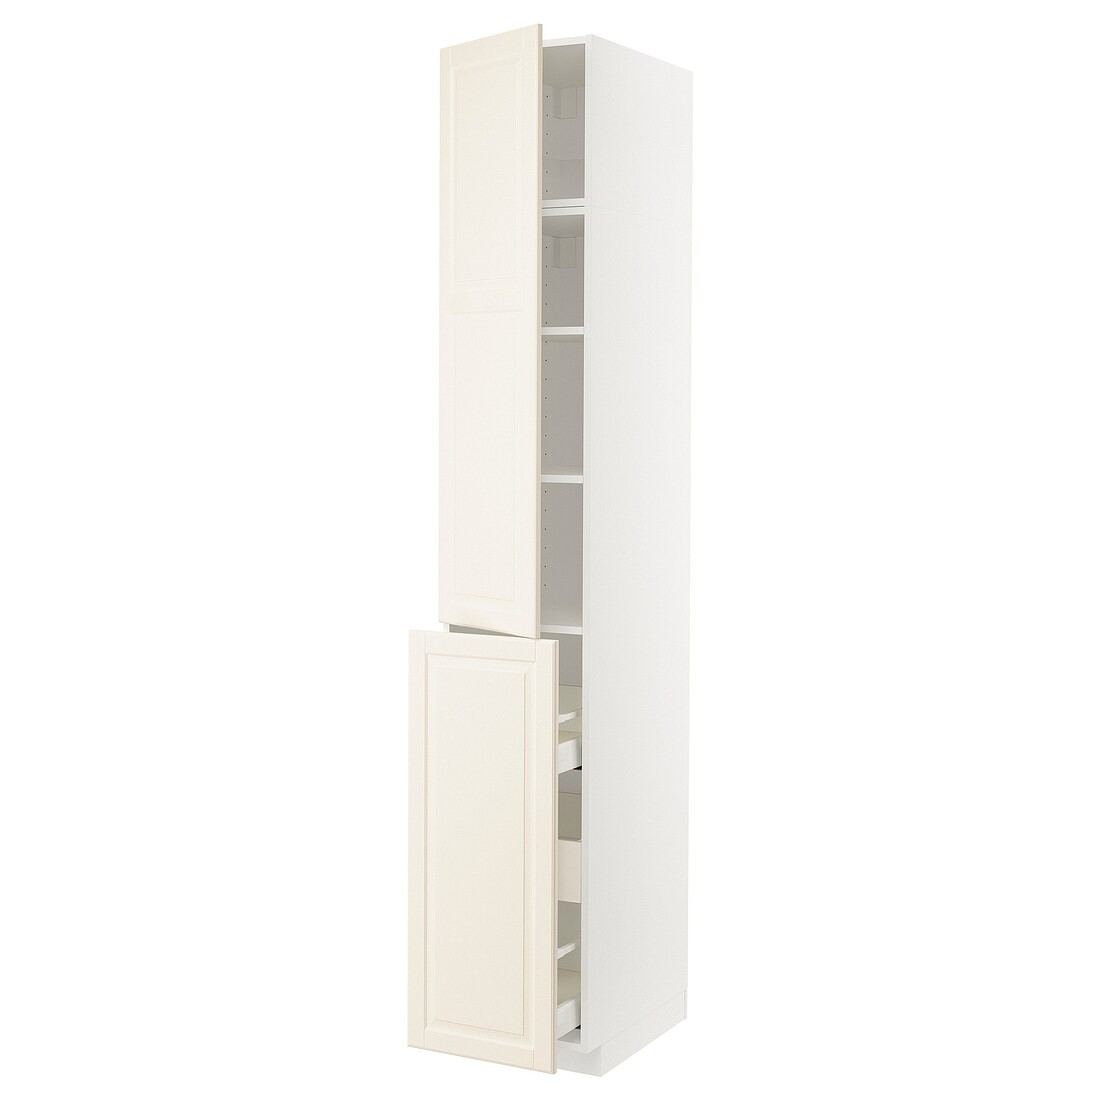 IKEA METOD МЕТОД / MAXIMERA МАКСИМЕРА Высокий шкаф 3 ящика / 1 дверь / 2 полки, белый / Bodbyn кремовый, 40x60x240 см 69467897 | 694.678.97